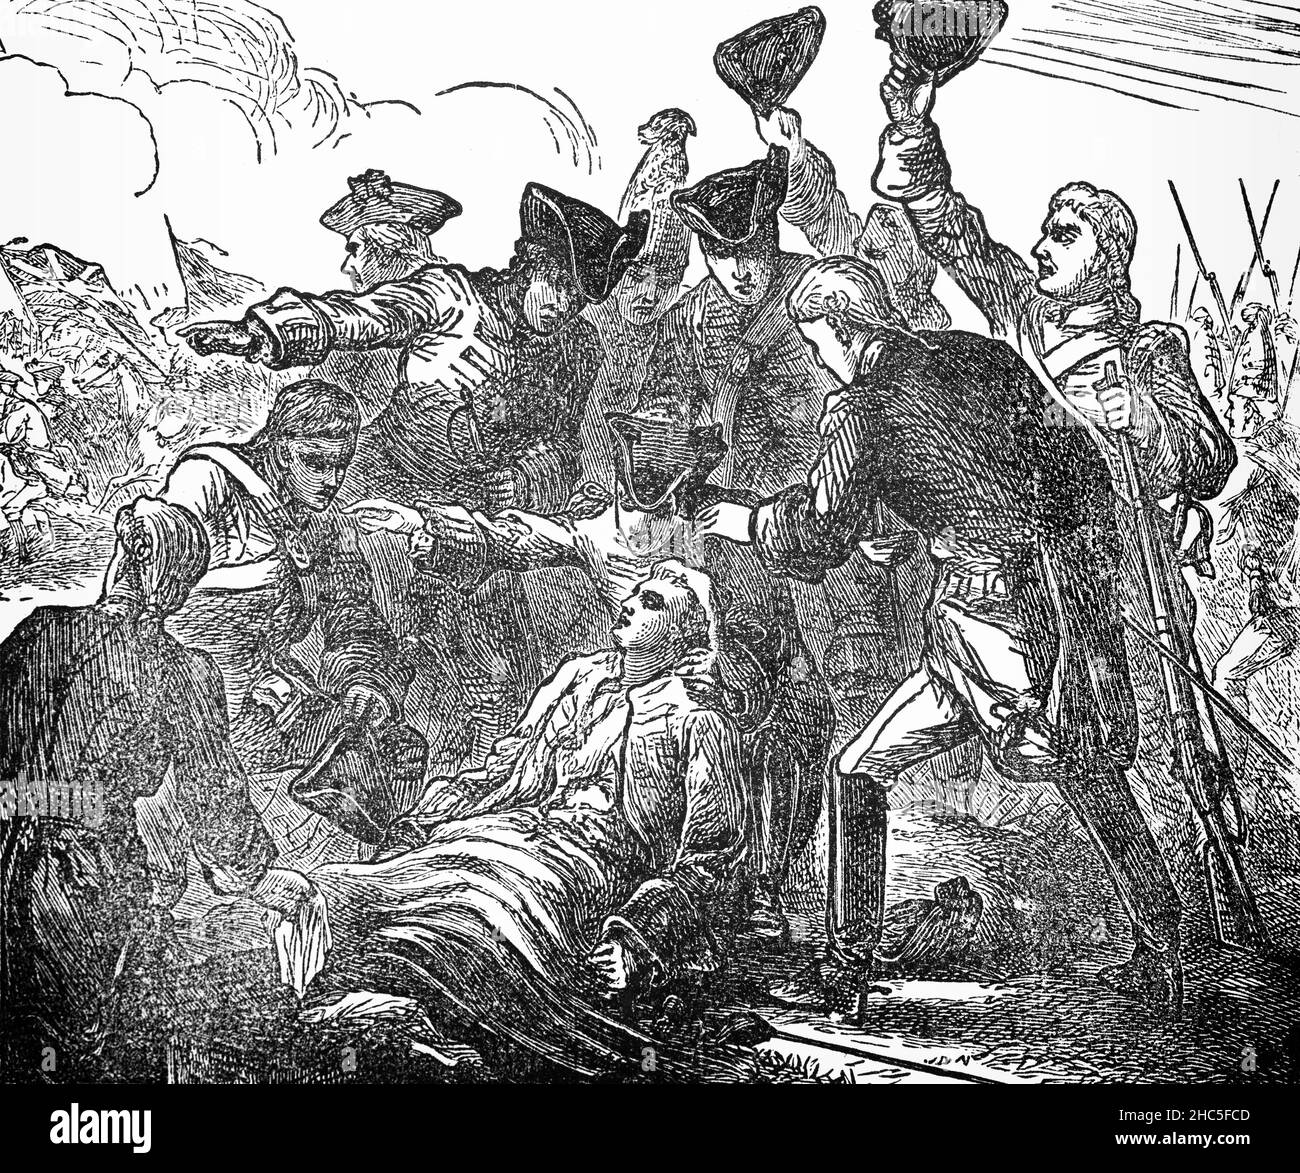 Un'illustrazione di fine 19th secolo della morte del generale maggiore James Wolfe (1727-1759), un ufficiale dell'esercito britannico ricordò principalmente per la sua vittoria in 1759 sopra i francesi alla battaglia delle pianure di Abraham in Quebec. Wolfe condusse 4.400 uomini in un atterraggio anfibio alla base delle scogliere ad ovest del Québec lungo il fiume St. Lawrence. Il suo esercito scalò la scogliera di 200 metri dal fiume e sorprende i francesi sotto il comando del marchese di Montcalm, che pensò che la scogliera sarebbe stata impensabile e fu sconfitto dopo quindici minuti di battaglia, durante i quali Wolfe fu ucciso e morì. Foto Stock